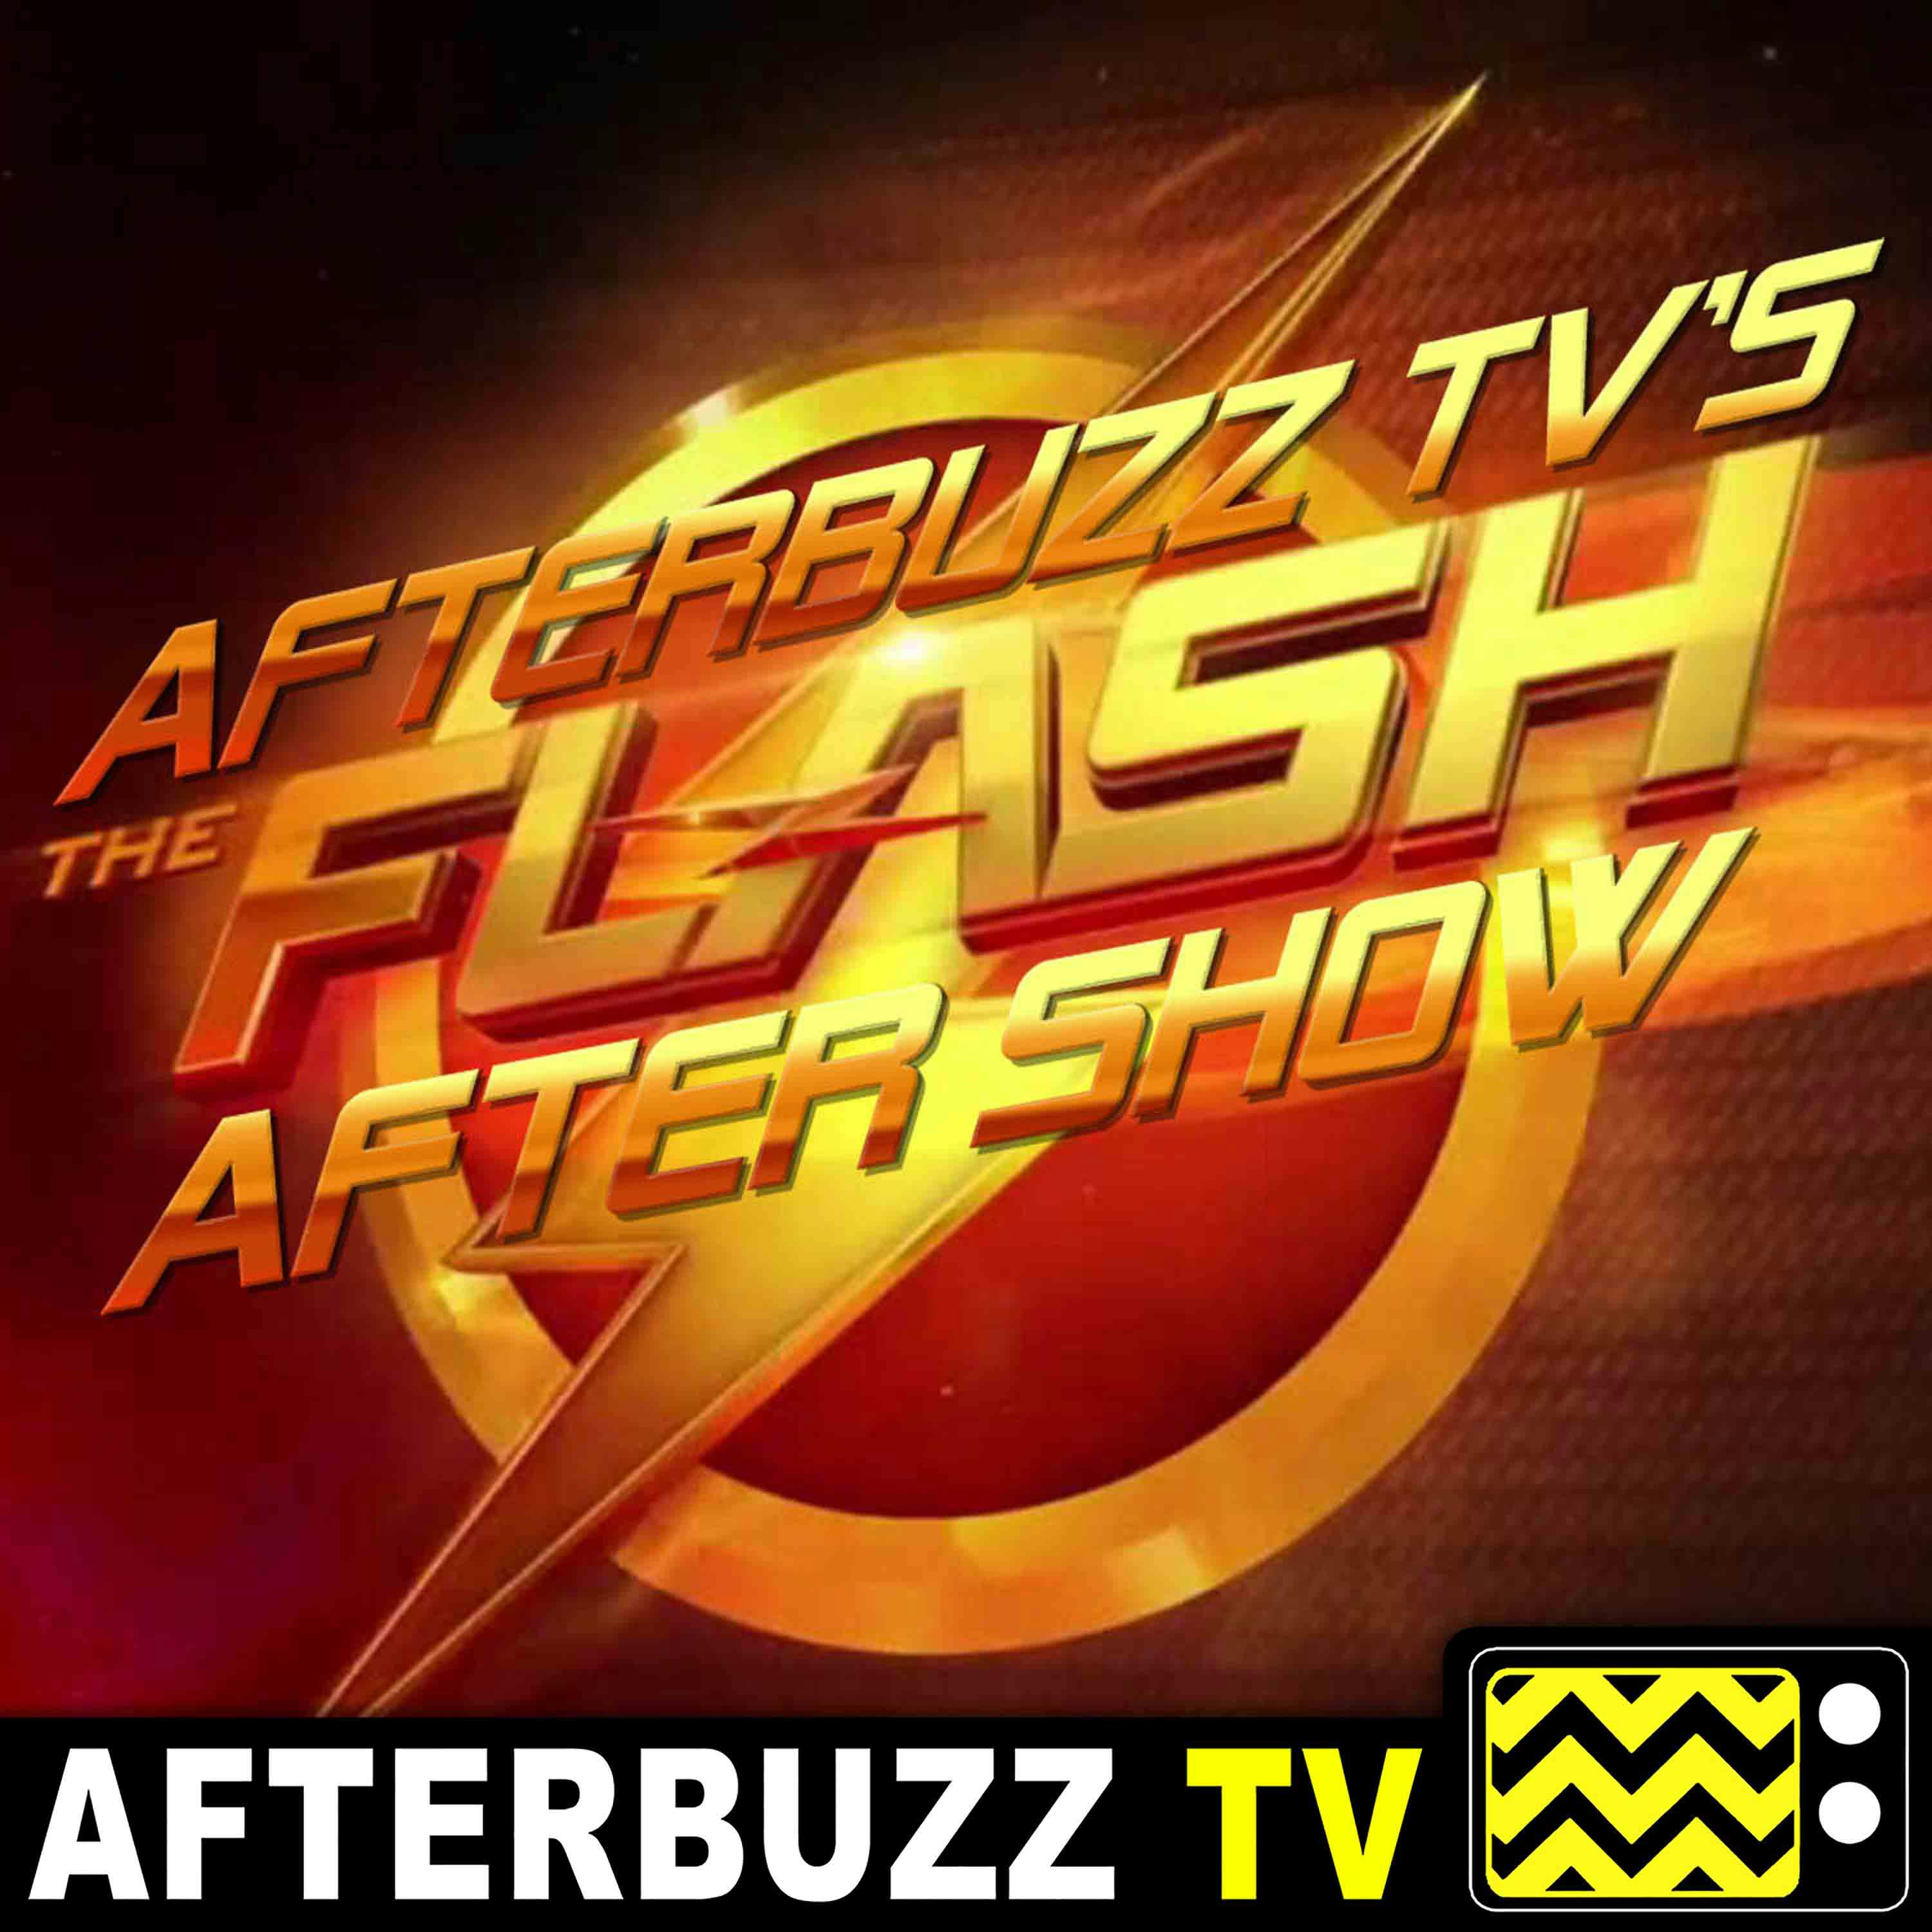 "The Last Temptation of Barry Allen Part 2" Season 6 Episode 8 'The Flash' Review